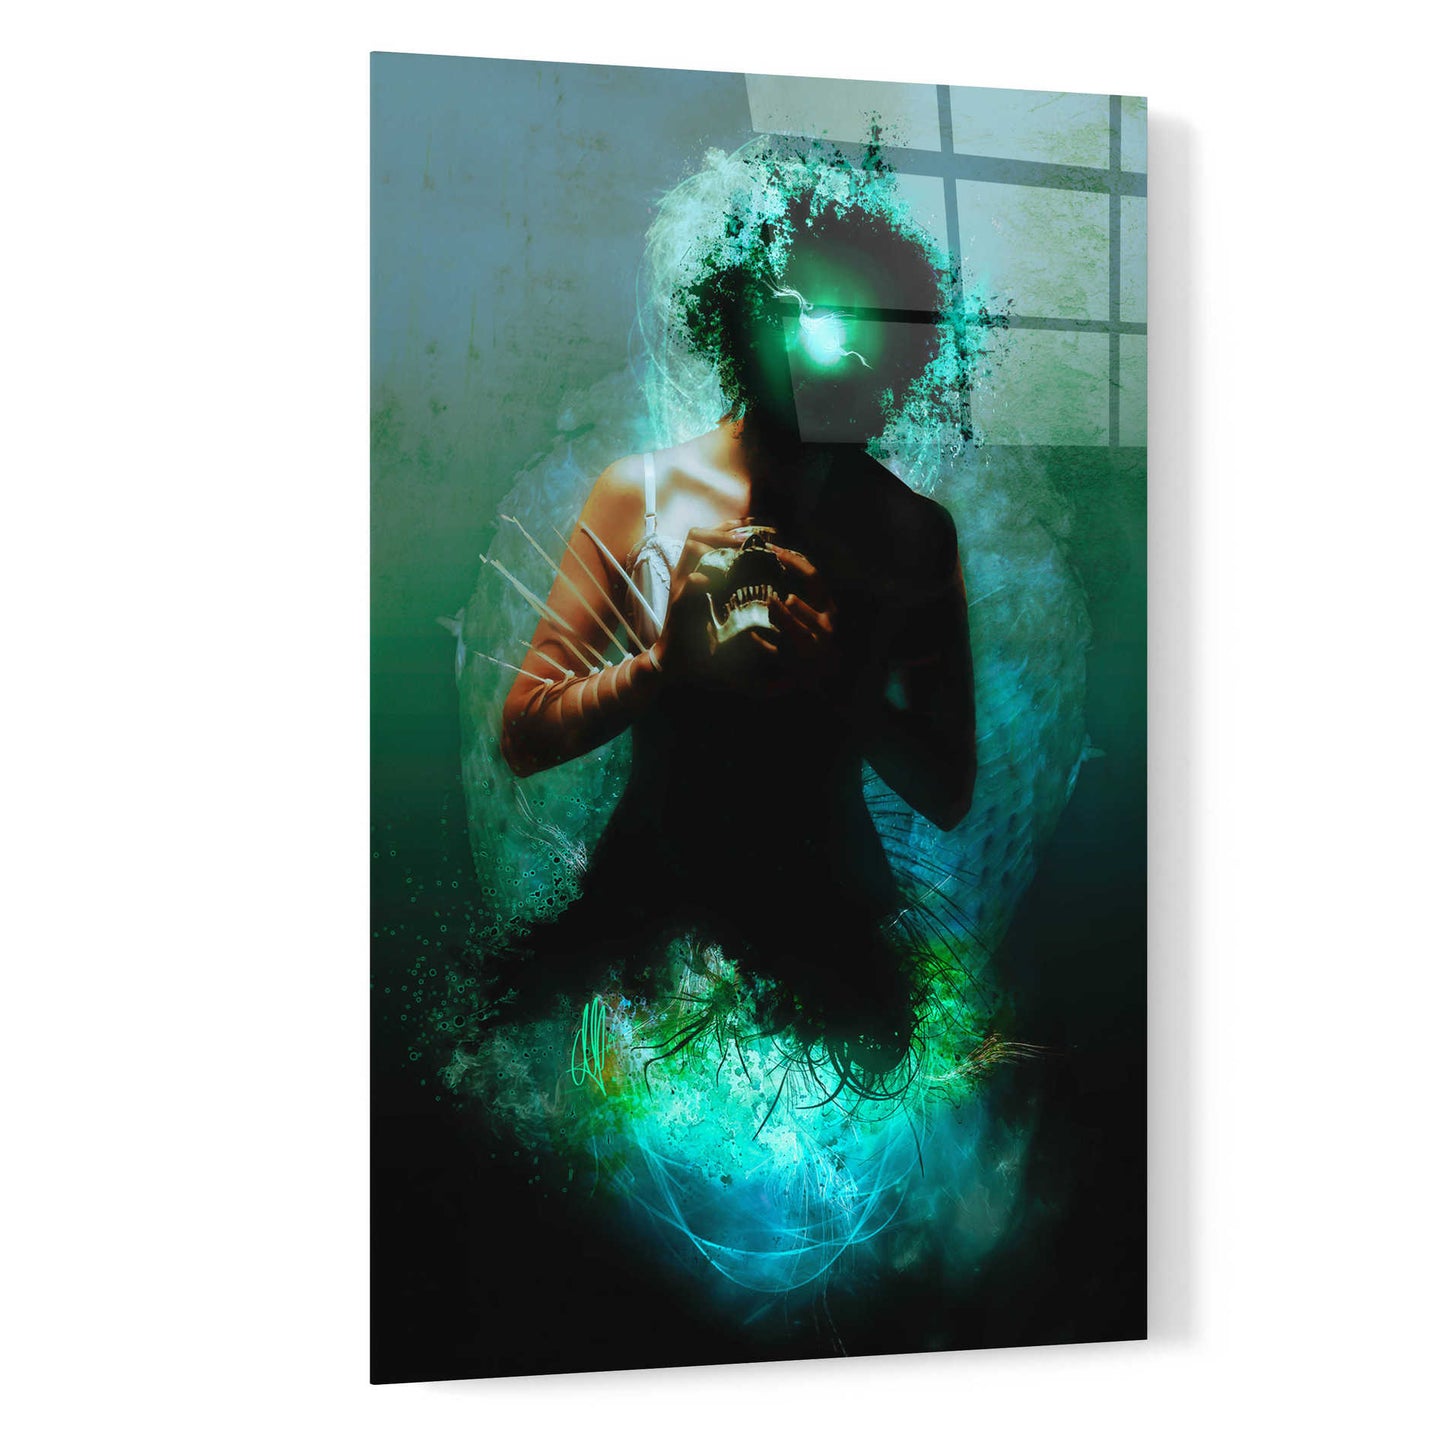 Epic Art 'Memento Mori' by Mario Sanchez Nevado, Acrylic Glass Wall Art,16x24